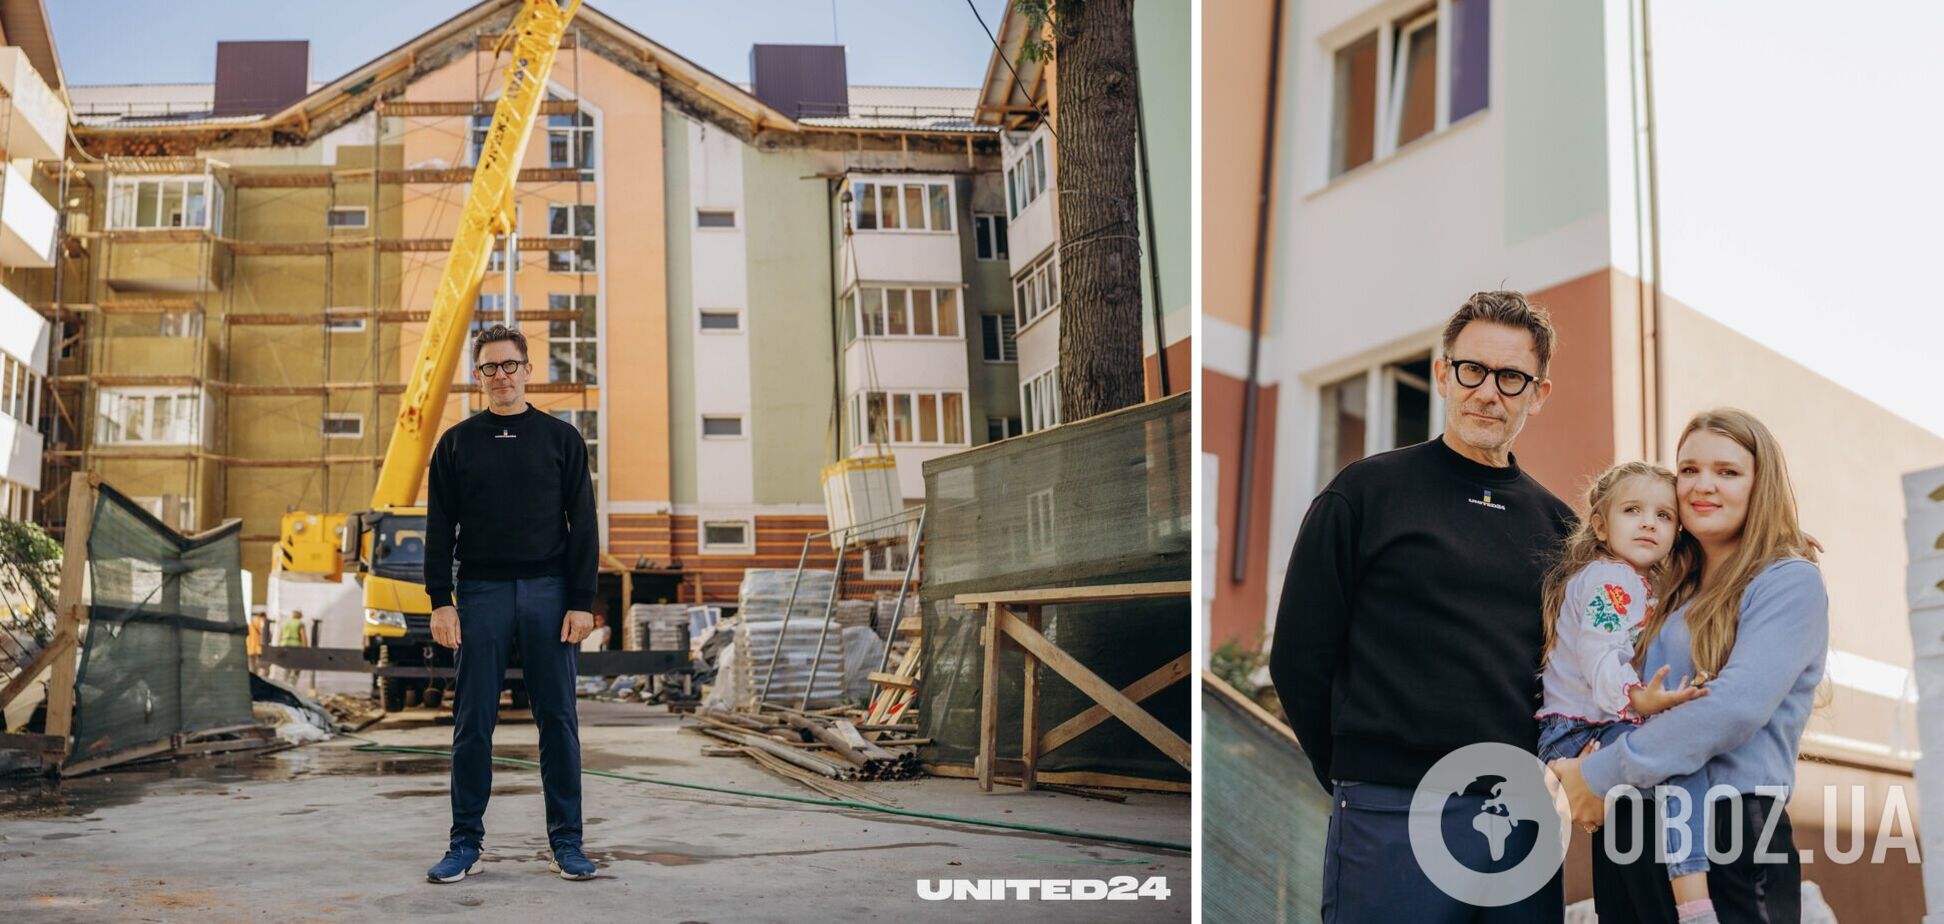 Амбасадор UNITED24 Мішель Азанавічус зустрівся в Ірпені з мешканцями будинку, на відновлення якого допоміг зібрати гроші